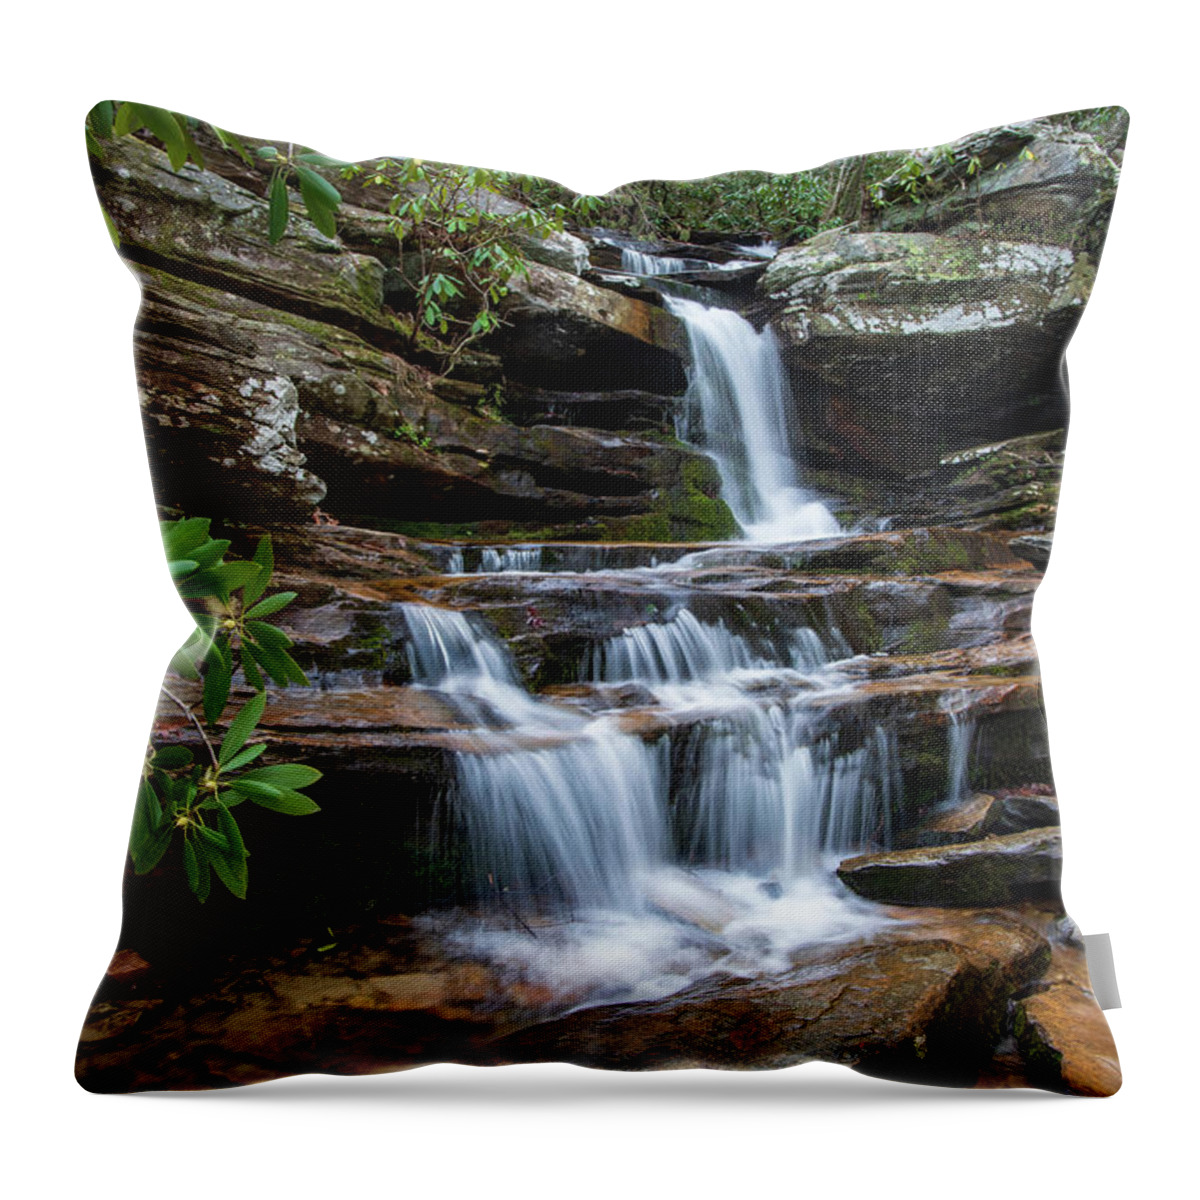 Hidden Falls. Hanging Rock State Park Throw Pillow featuring the photograph Hidden Falls by Chris Berrier